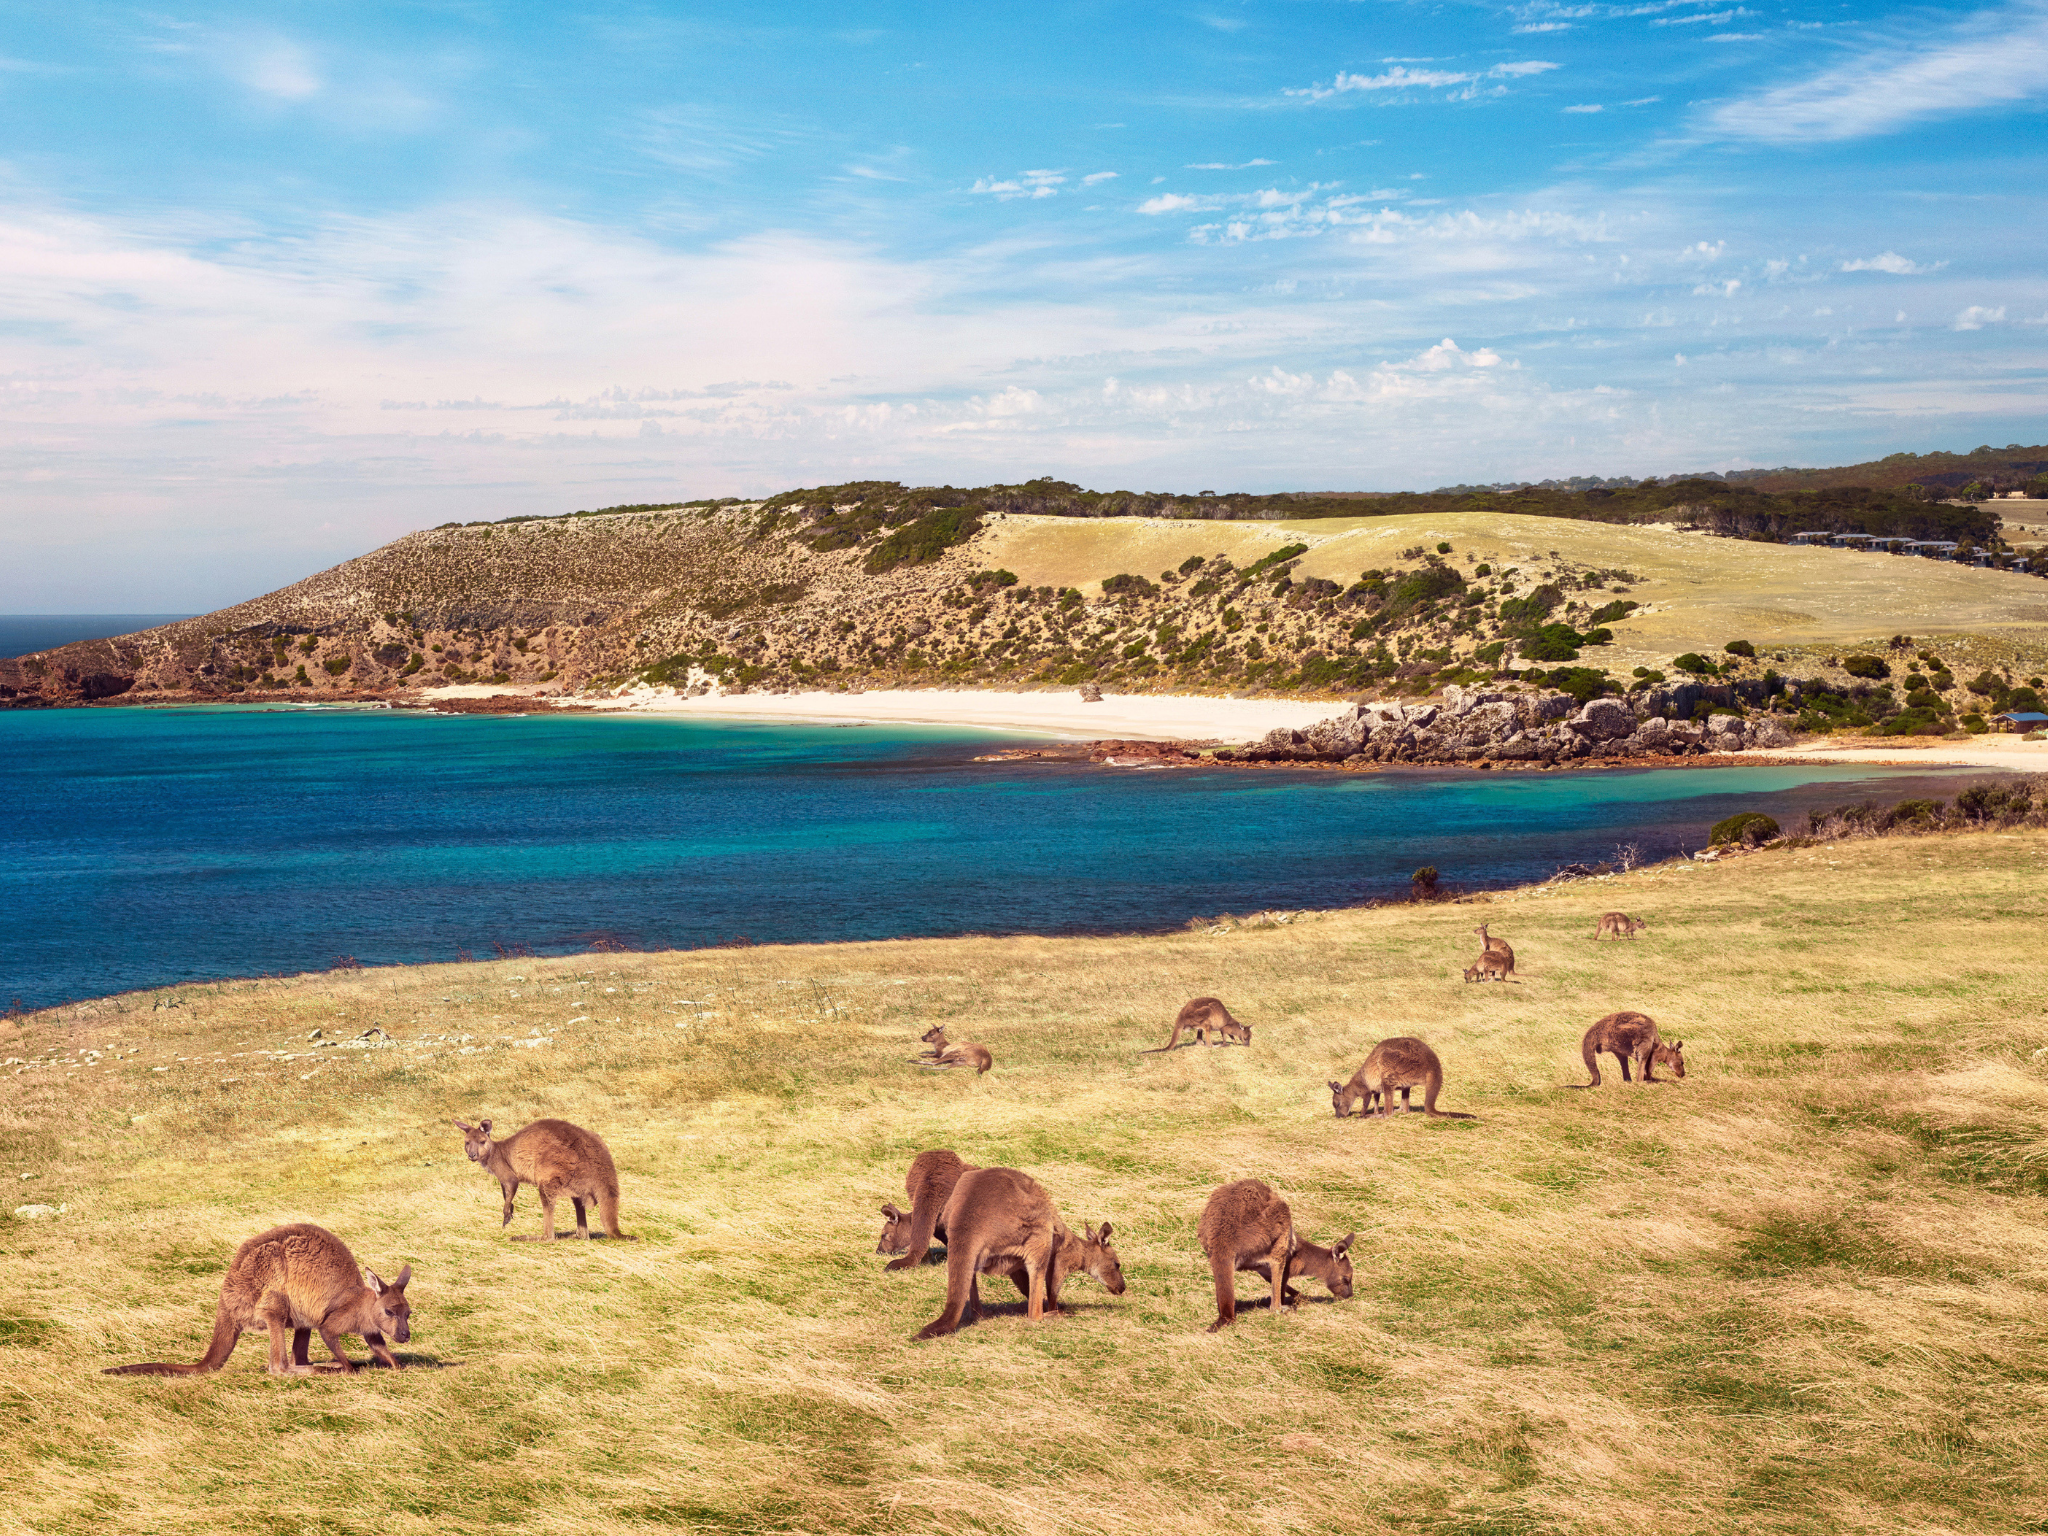 Kangaroos on the beach at Stokes Bay at Kangaroo Island